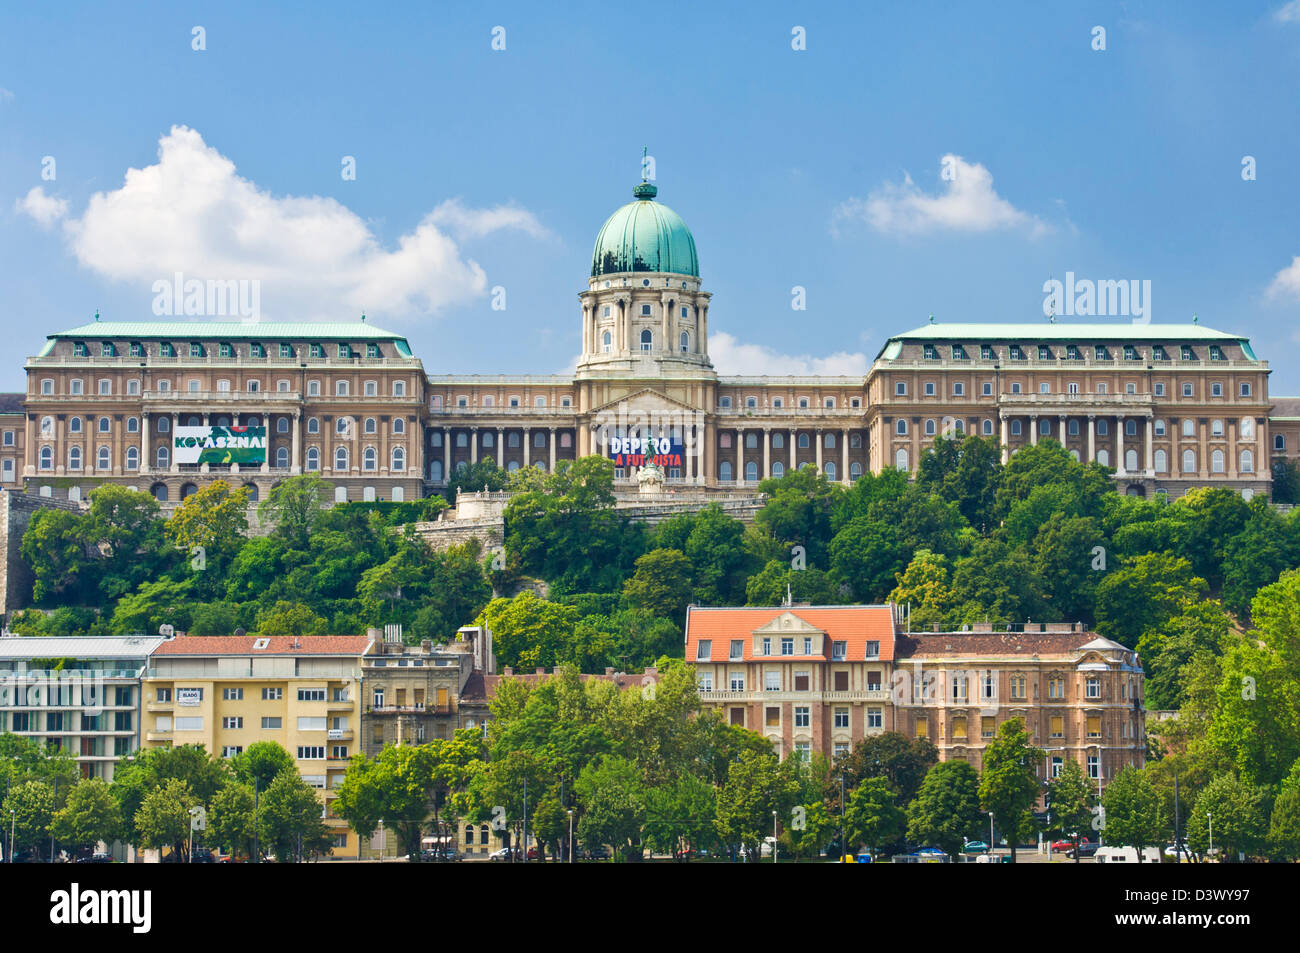 Galerie Nationale Hongroise faisant partie du Palais Royal, quartier du château de Buda Budapest Hongrie Europe EU Banque D'Images